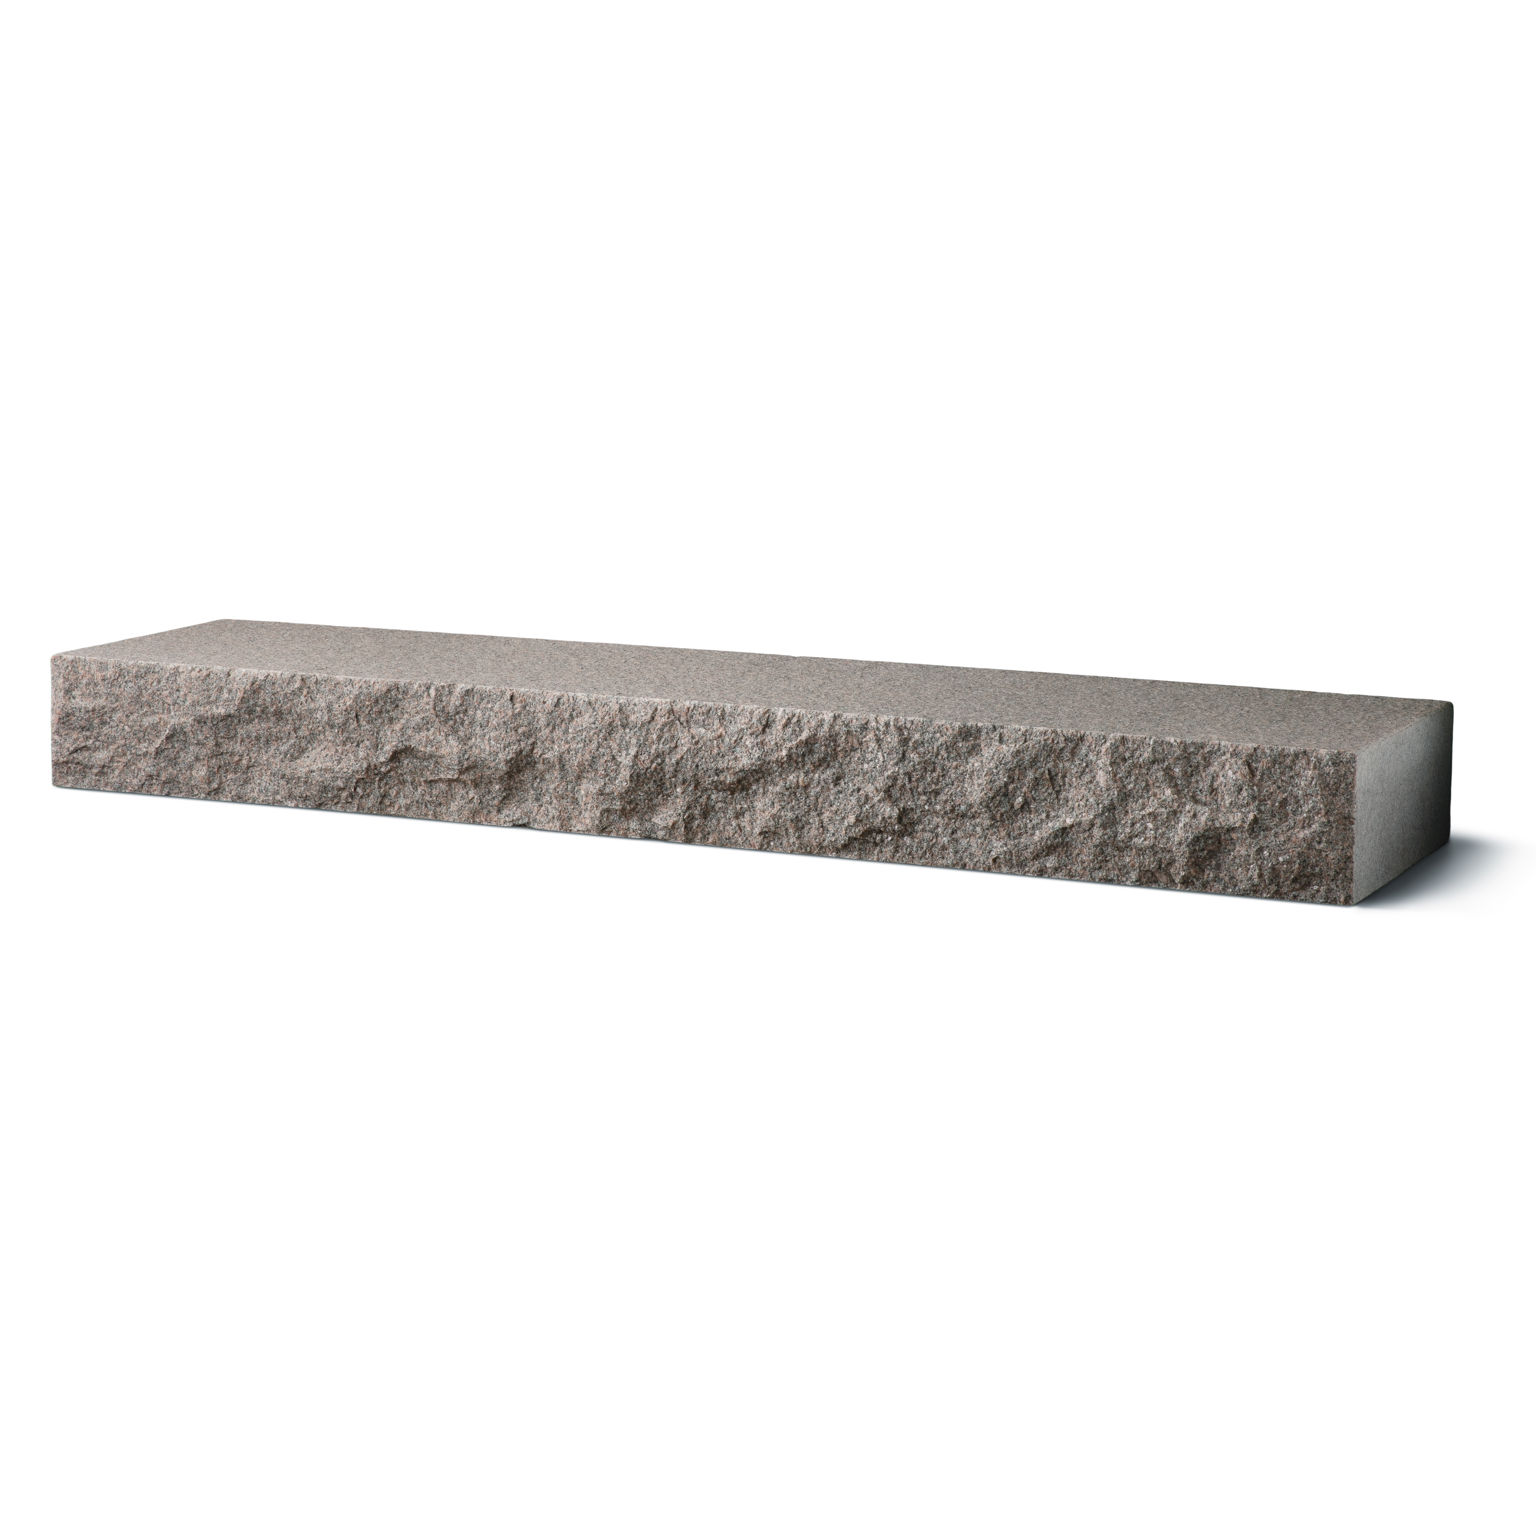 Produktbild på blocksteg i granit med flammad topp och råkilad front;i måtten 2000x350x150 mm och i färgen Bohus grå.